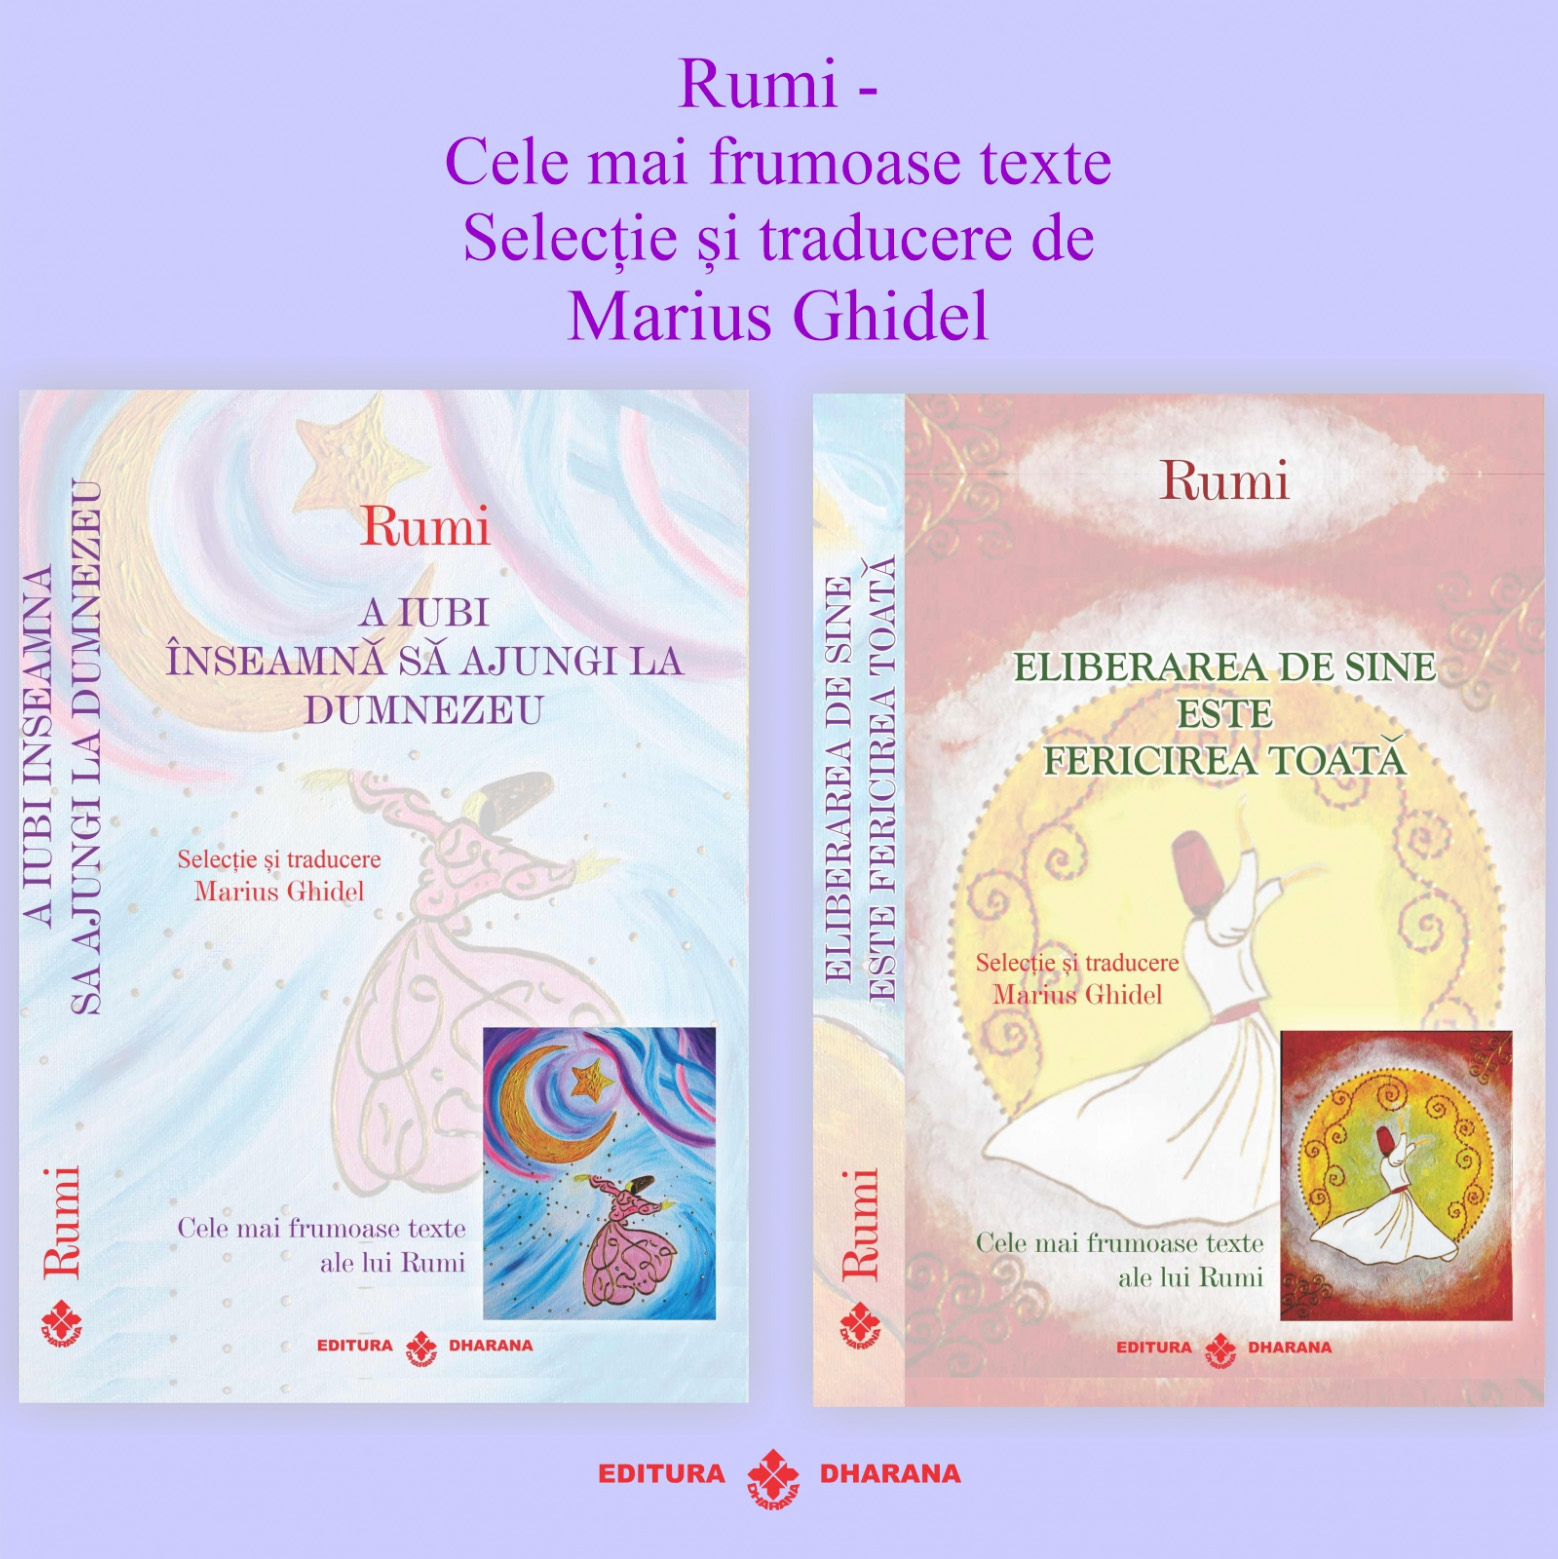 Set carti Rumi – Cele mai frumoase texte: A iubi inseamna sa ajungi la Dumnezeu / Eliberarea de sine este fericirea toata | Rumi carturesti.ro imagine 2022